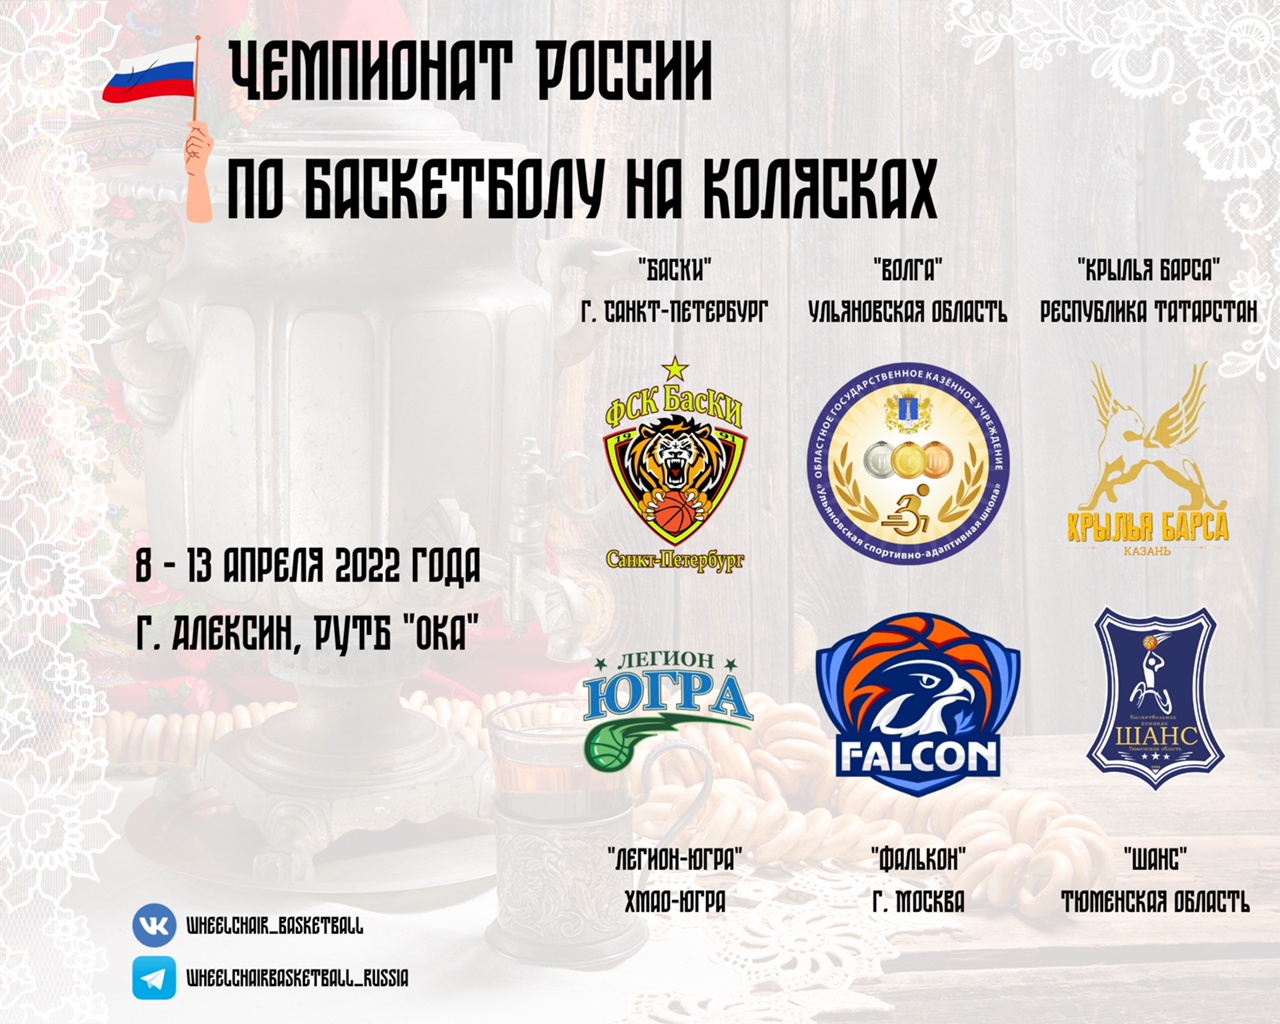 6 команд поведут борьбу за титул чемпионов России по баскетболу на колясках в спортивном сезоне 2022 года